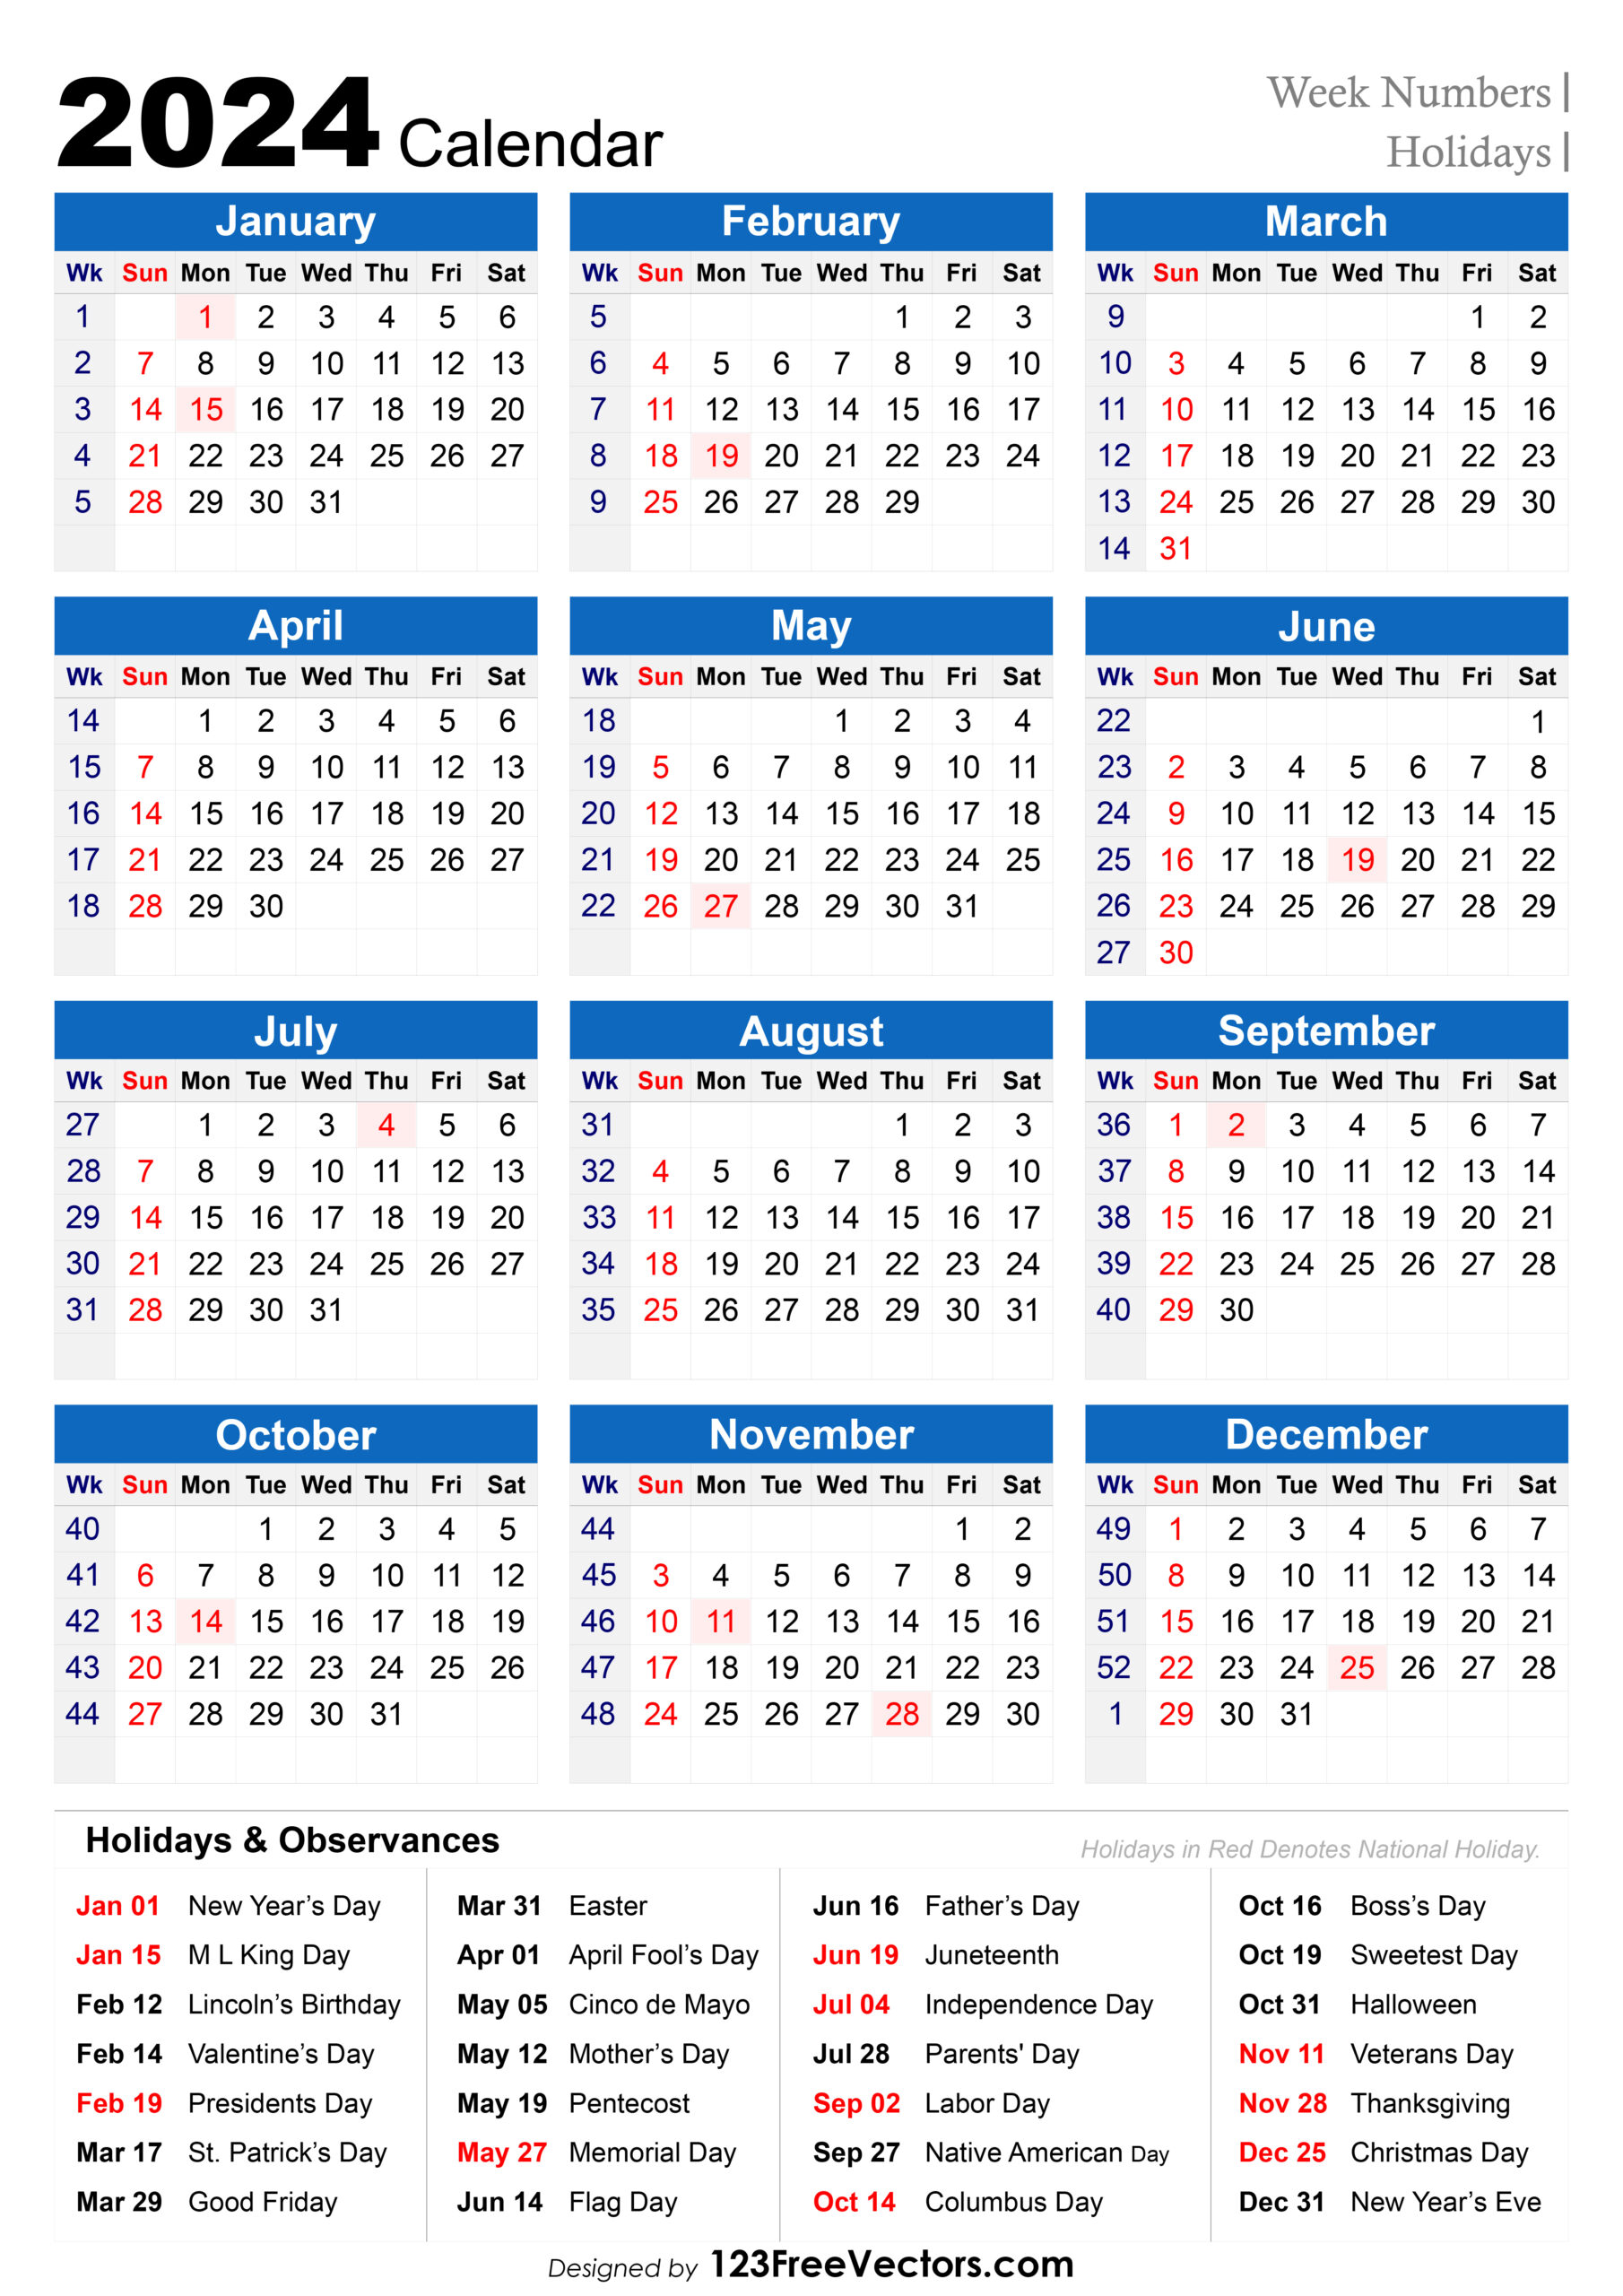 Free 2024 Holiday Calendar With Week Numbers | Printable Calendar 2024 With Weeks